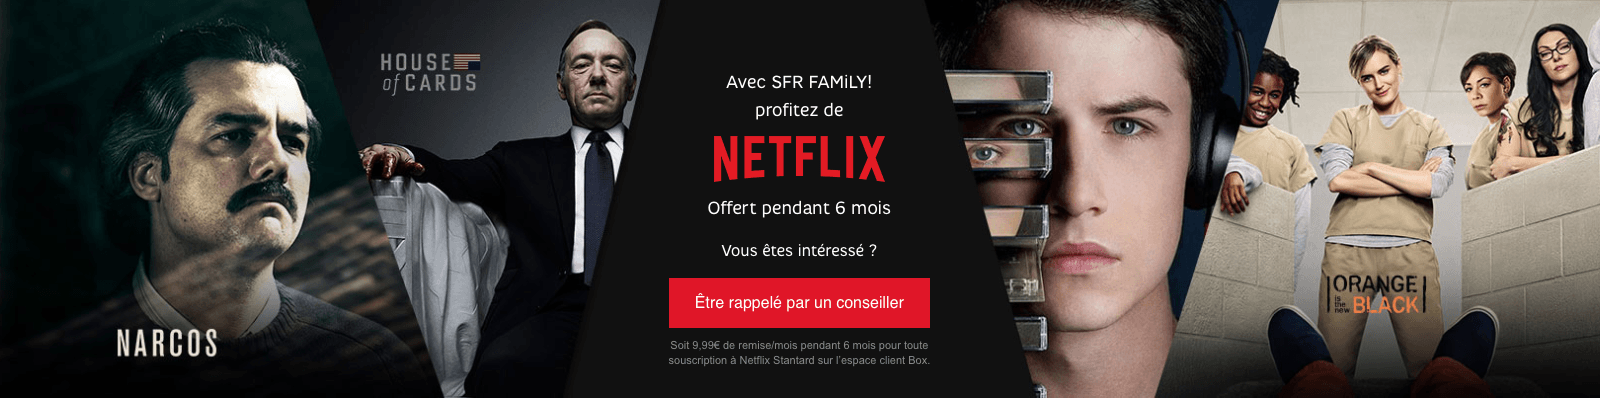 Bénéficiez de 6 mois d’abonnement gratuits à Netflix avec l’offre SFR family